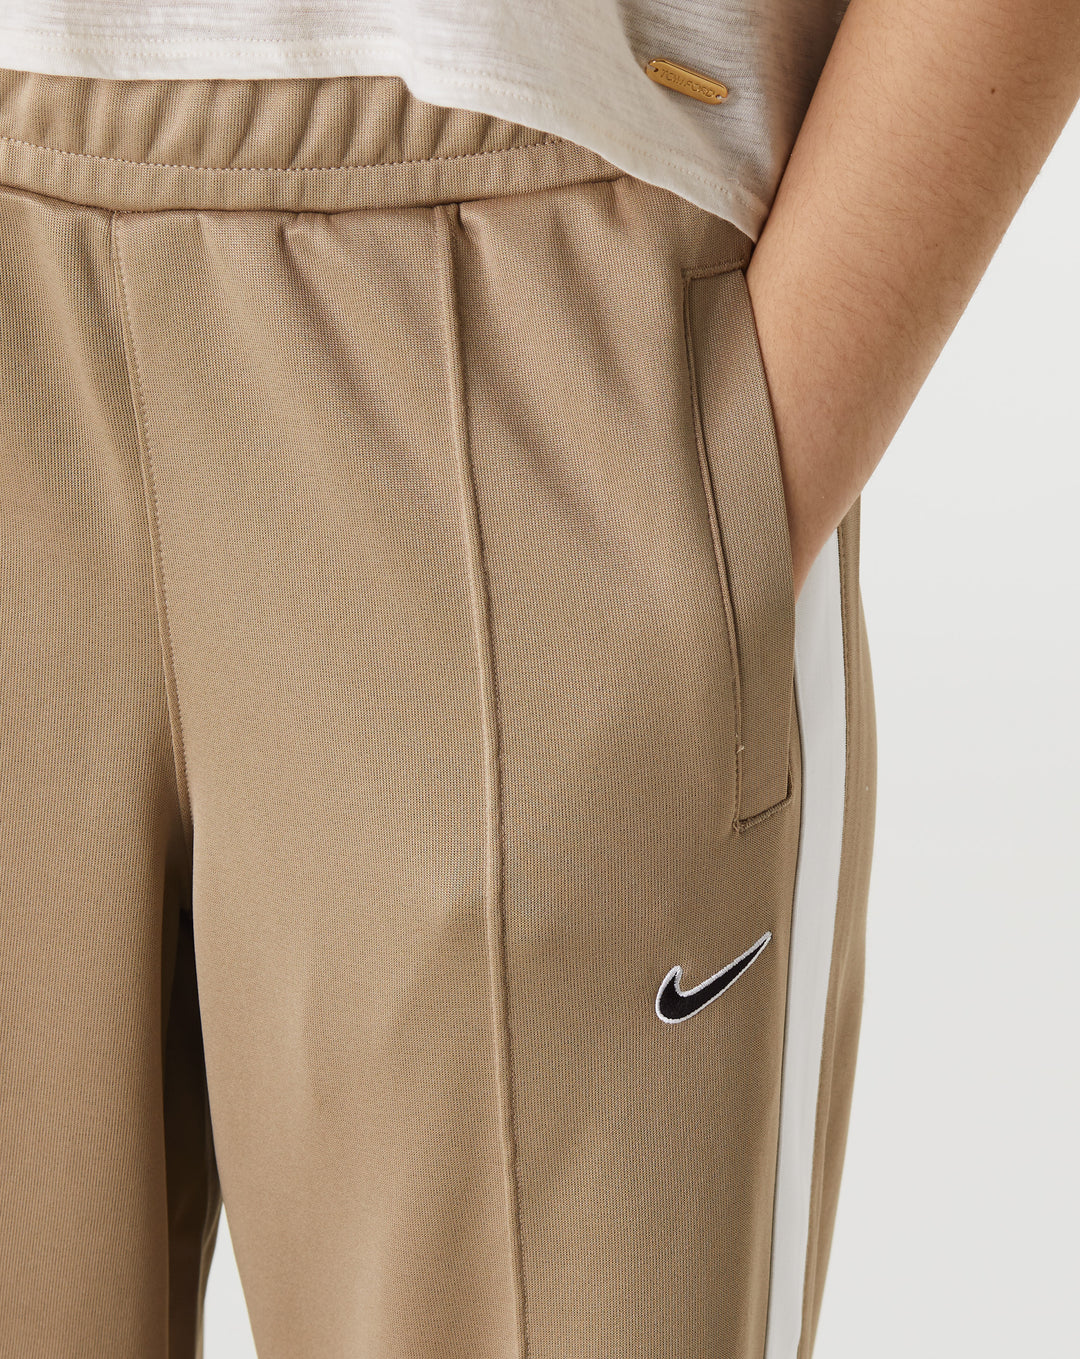 Nike Women's Pants  - XHIBITION